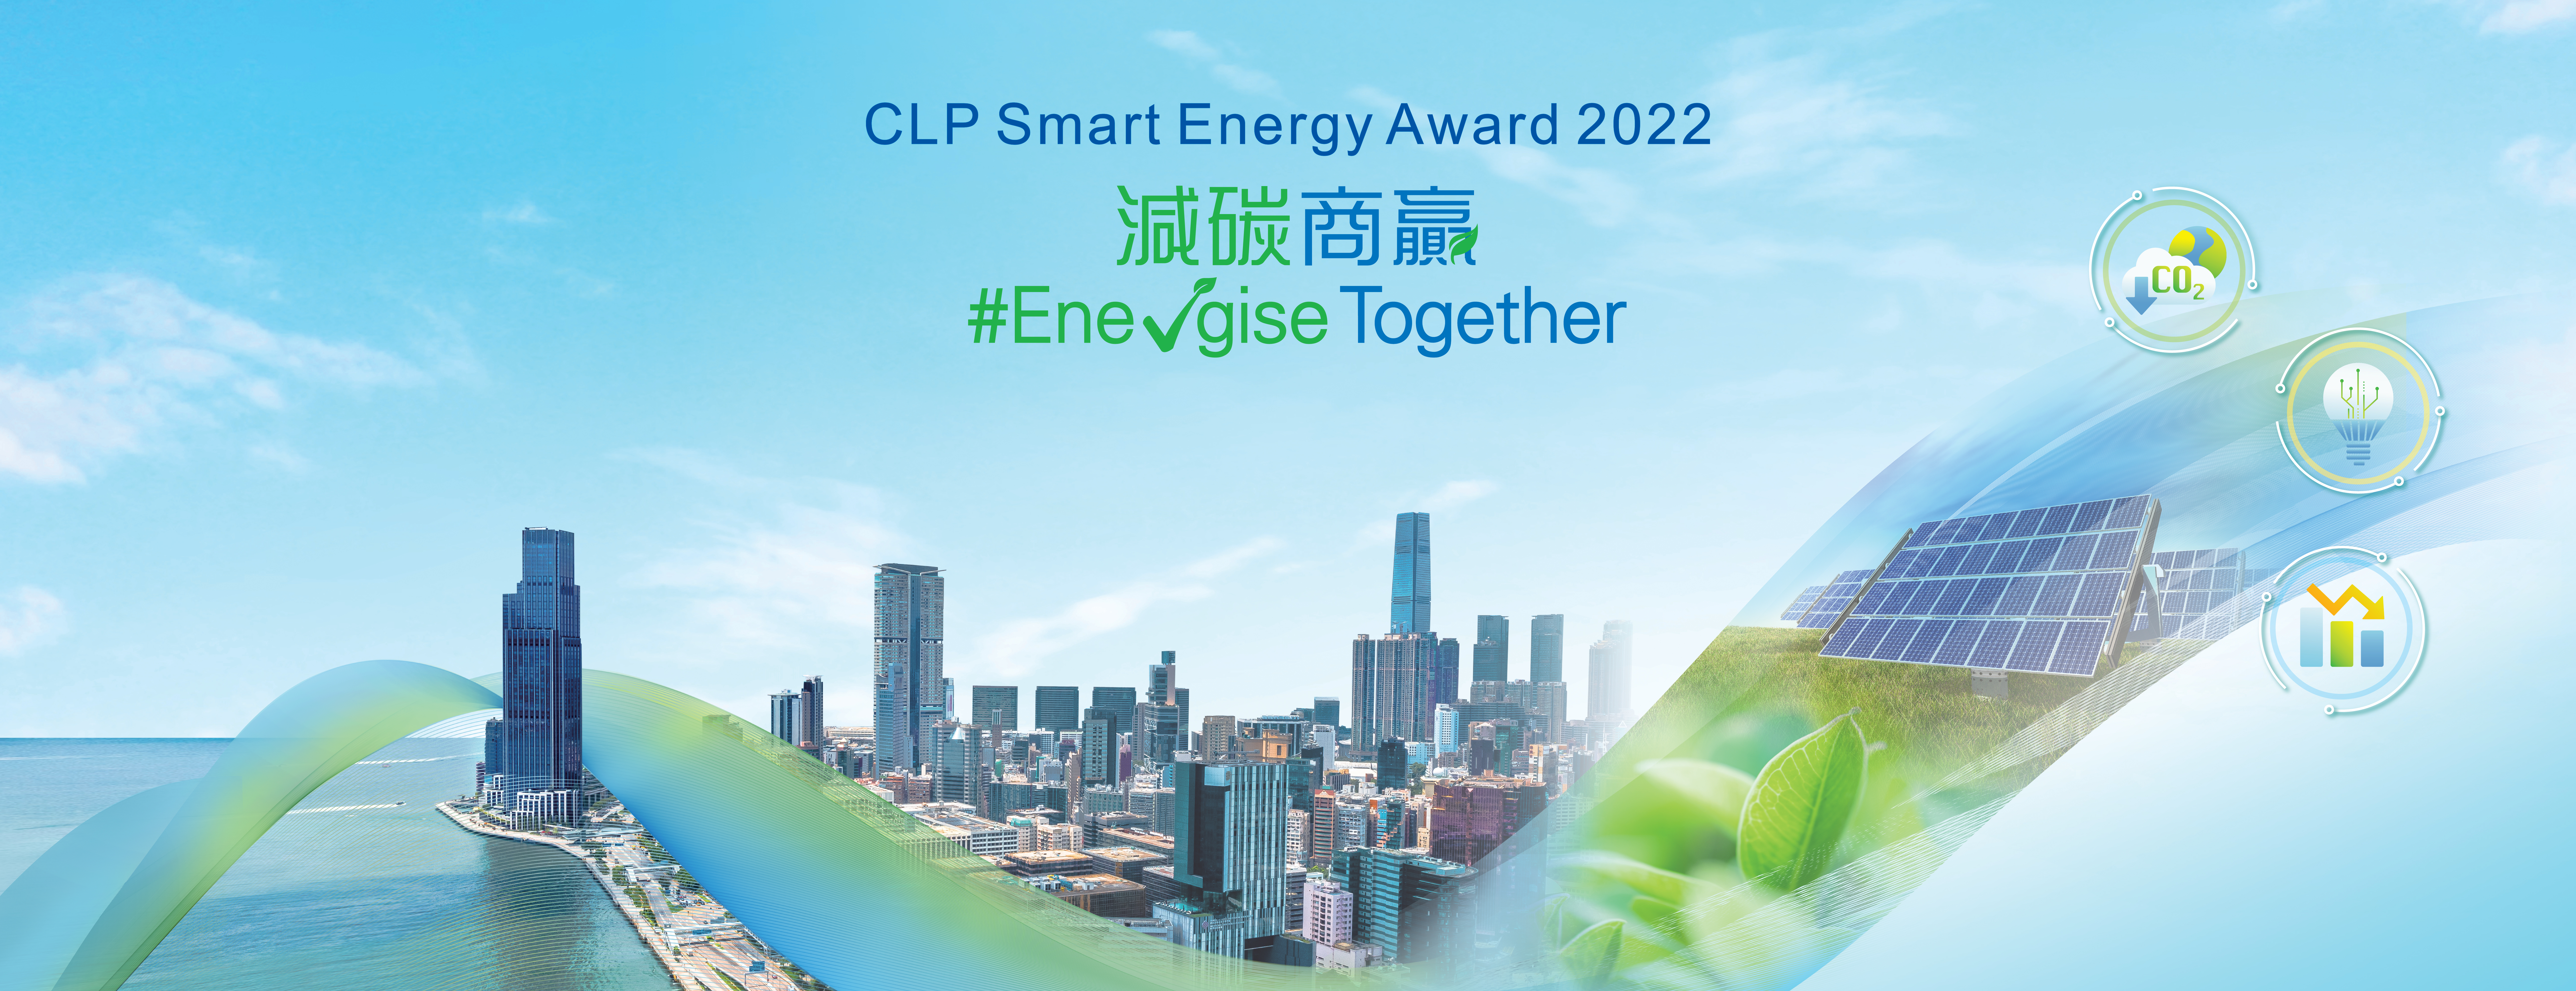 CLP Smart Energy Award 2022